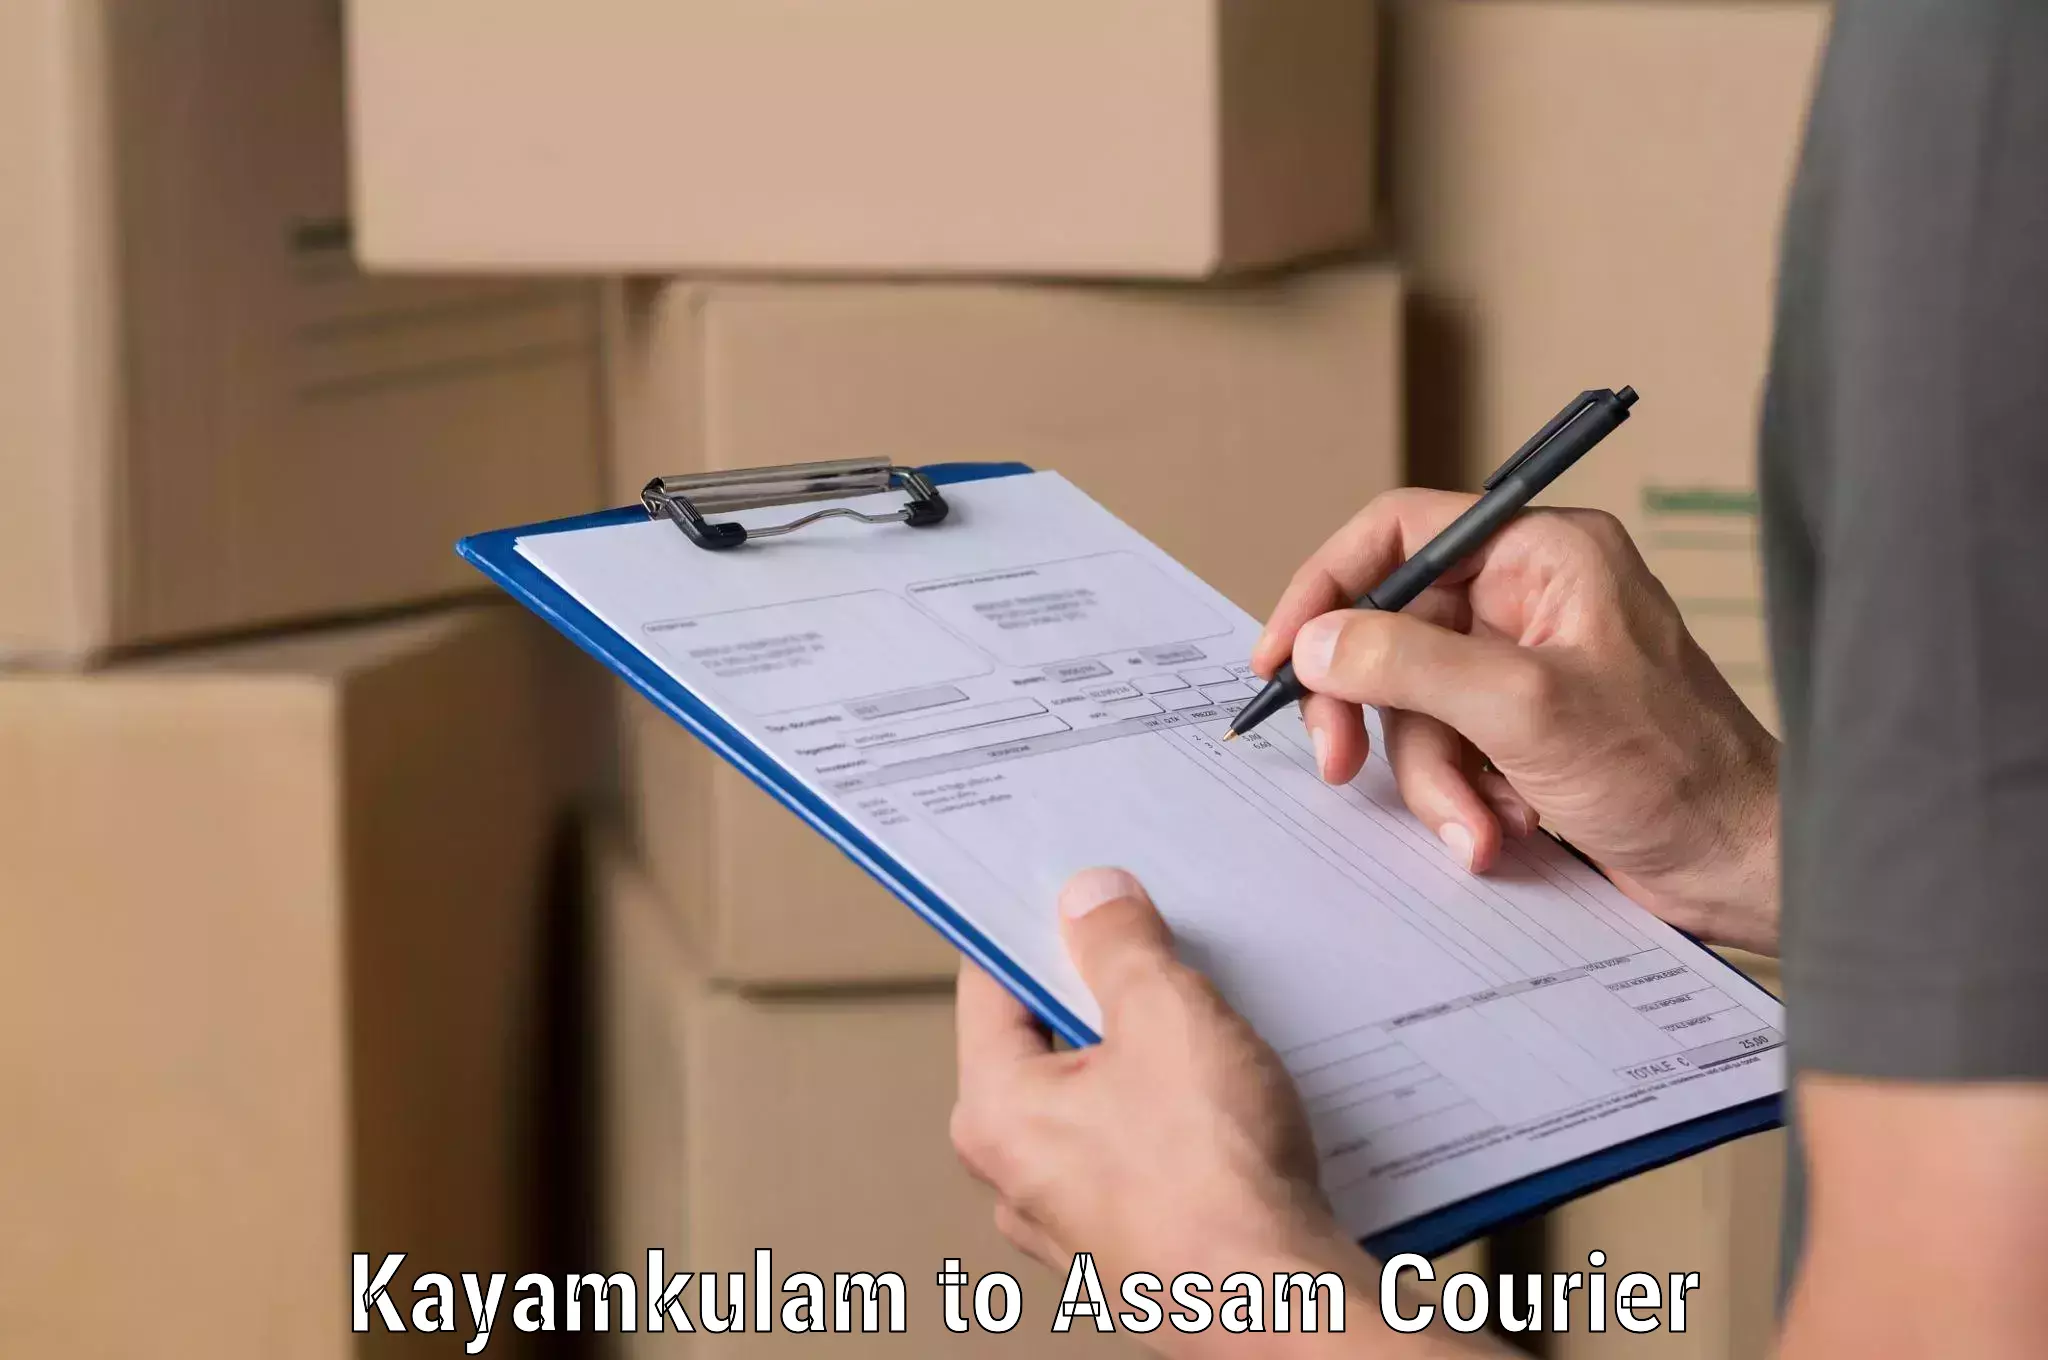 24/7 courier service Kayamkulam to Hojai